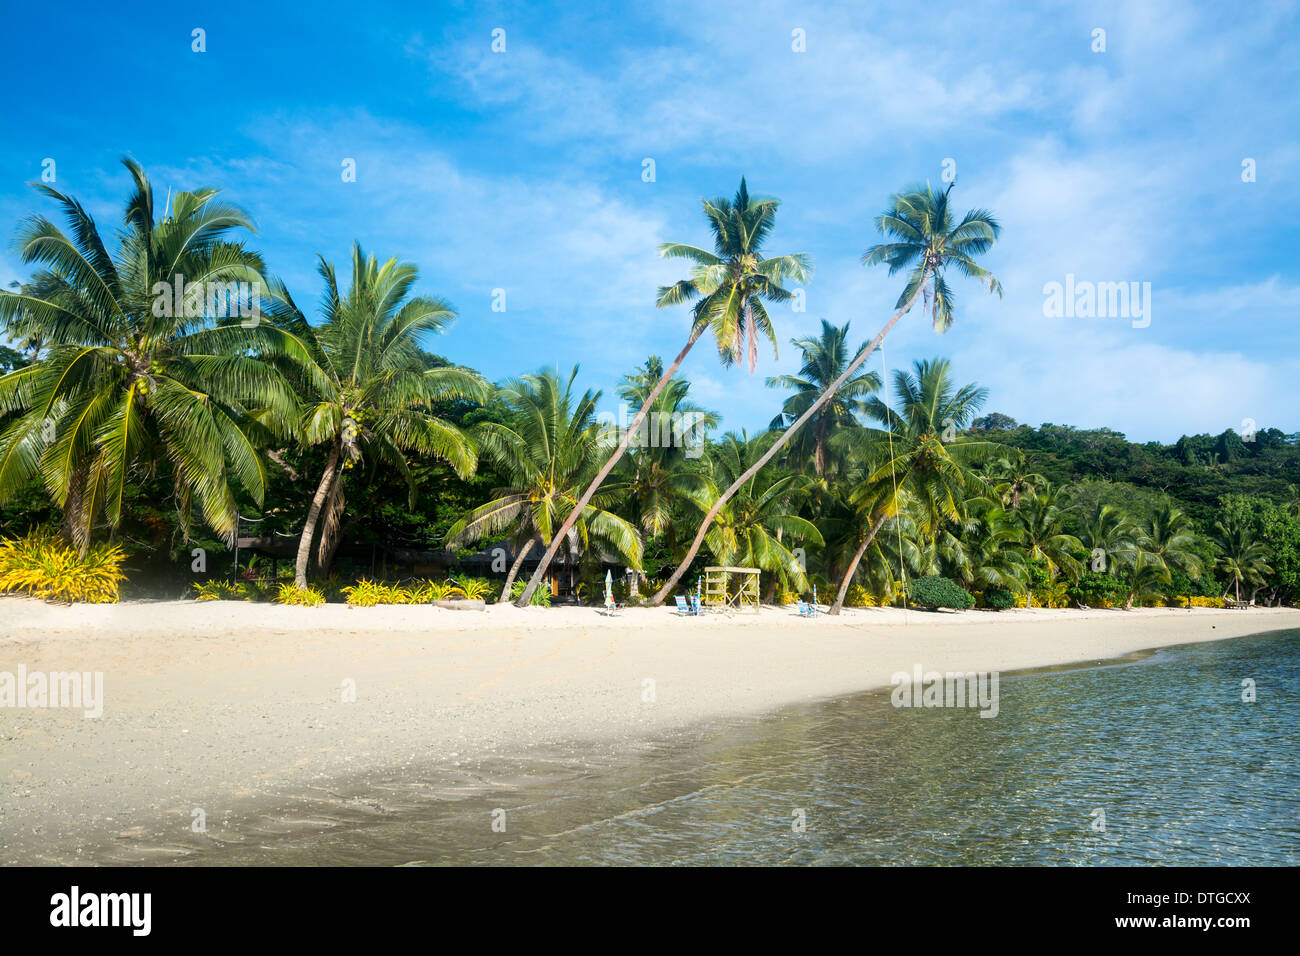 Un lieu de villégiature tropical luxuriant avec plage bordée de palmiers et de sable blanc est idéal pour les escapades en famille. Banque D'Images